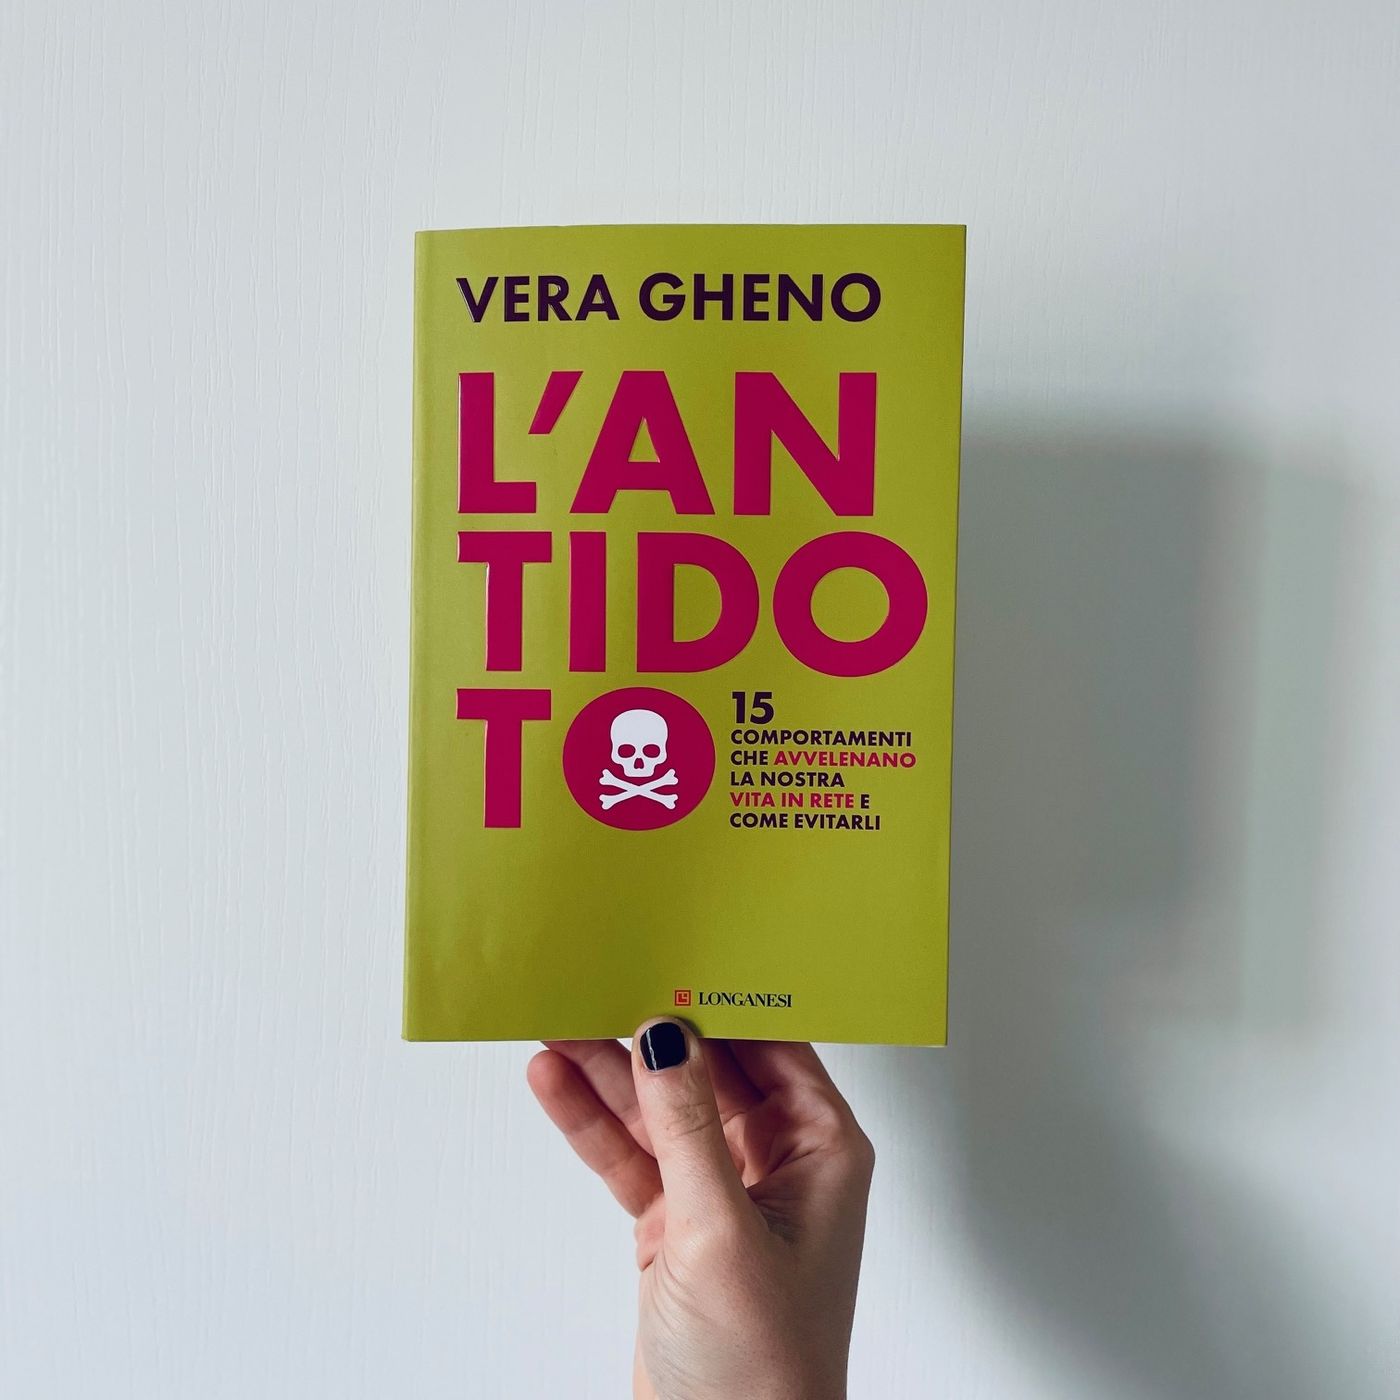 Vivere e sopravvivere online - L'ANTIDOTO di Vera Gheno (Longanesi)